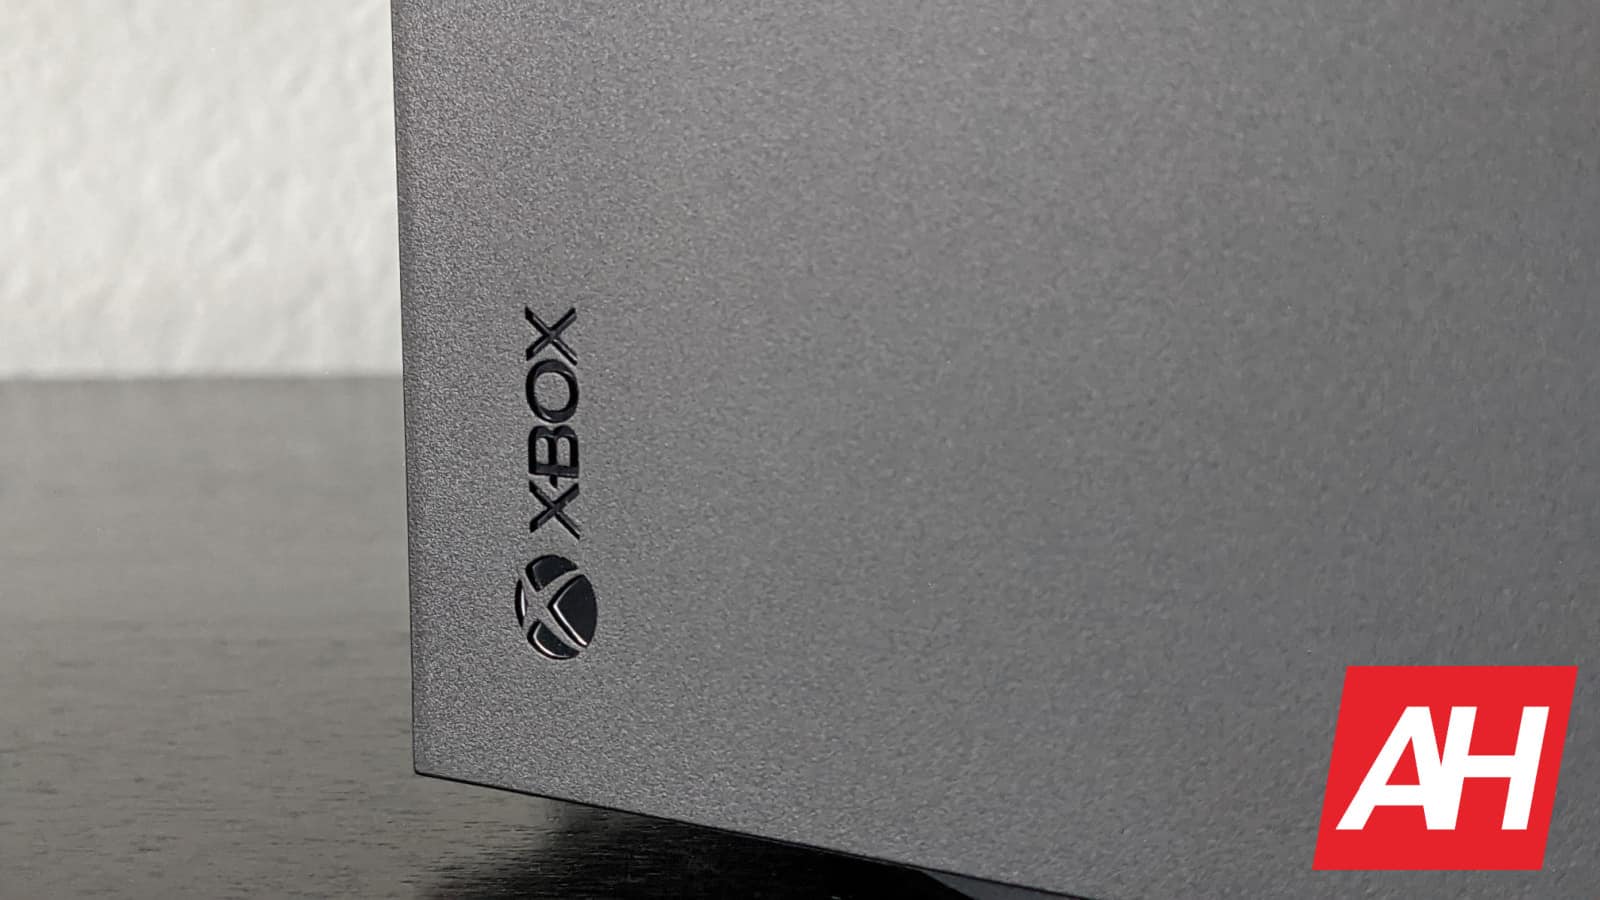 La próxima Xbox podría incluir compatibilidad con tiendas de PC